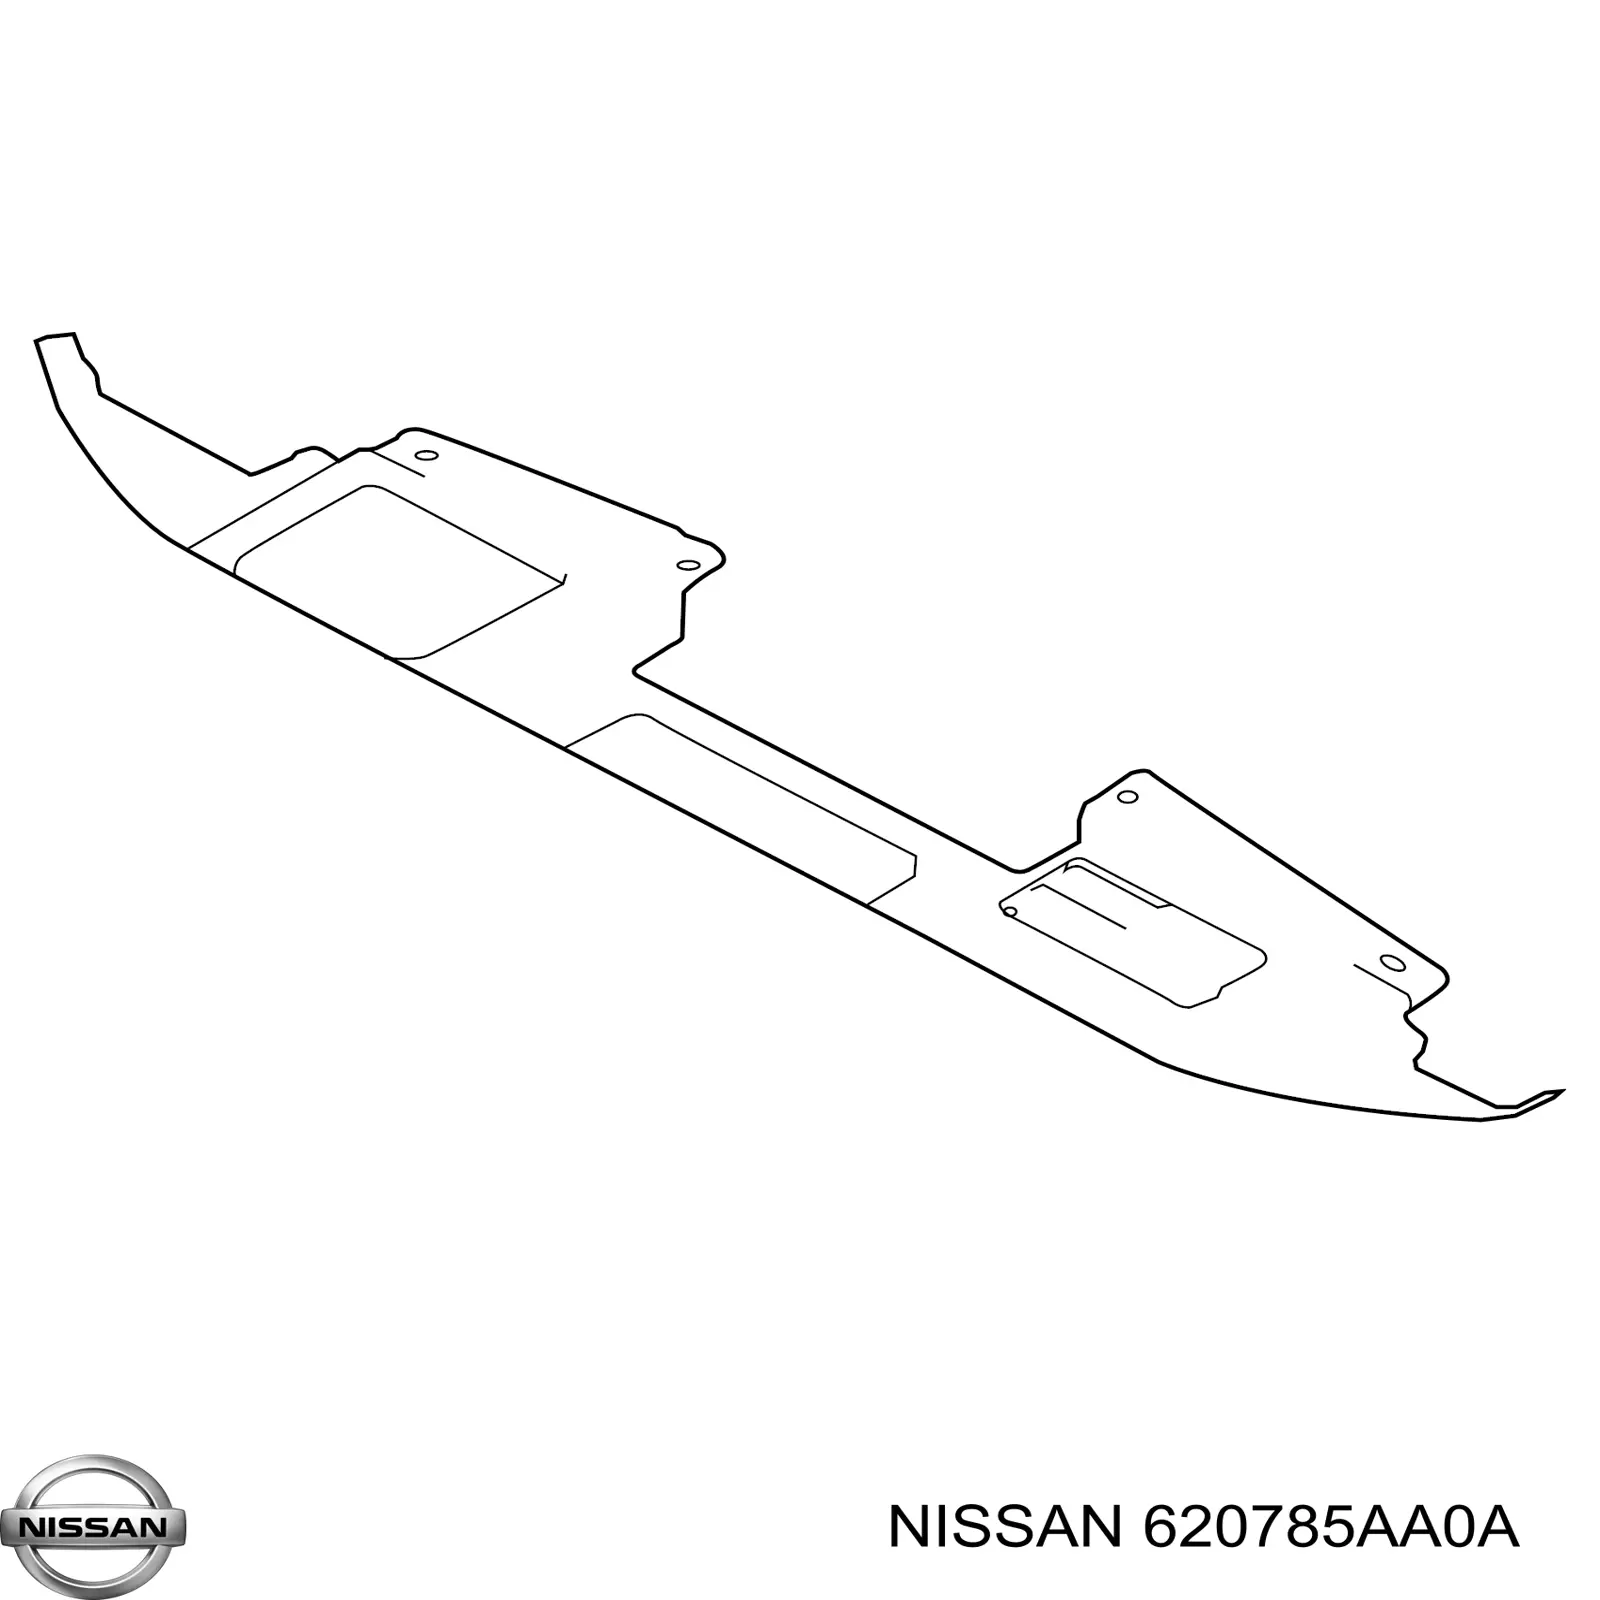 620785AA0A Nissan ajuste panel frontal (calibrador de radiador Superior)